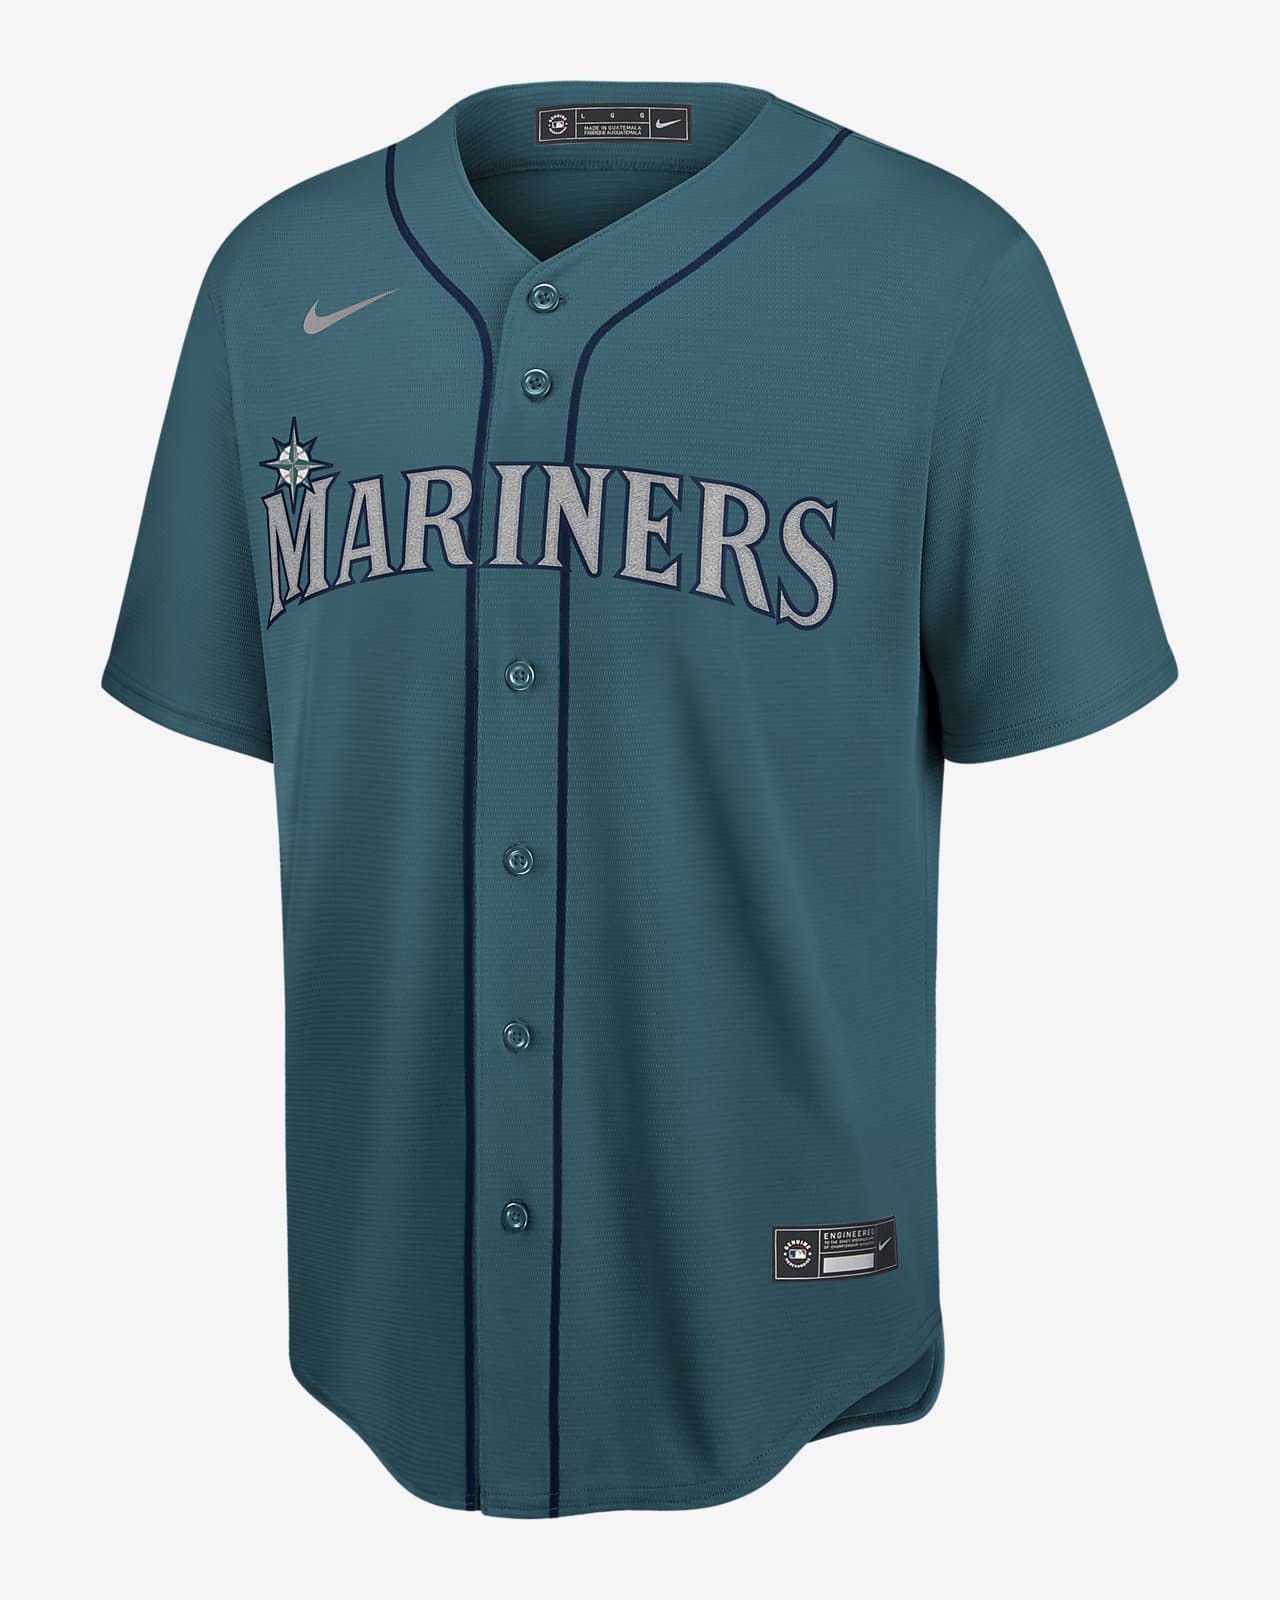 Seattle Mariners - Page 3 of 3 - Cheap MLB Baseball Jerseys